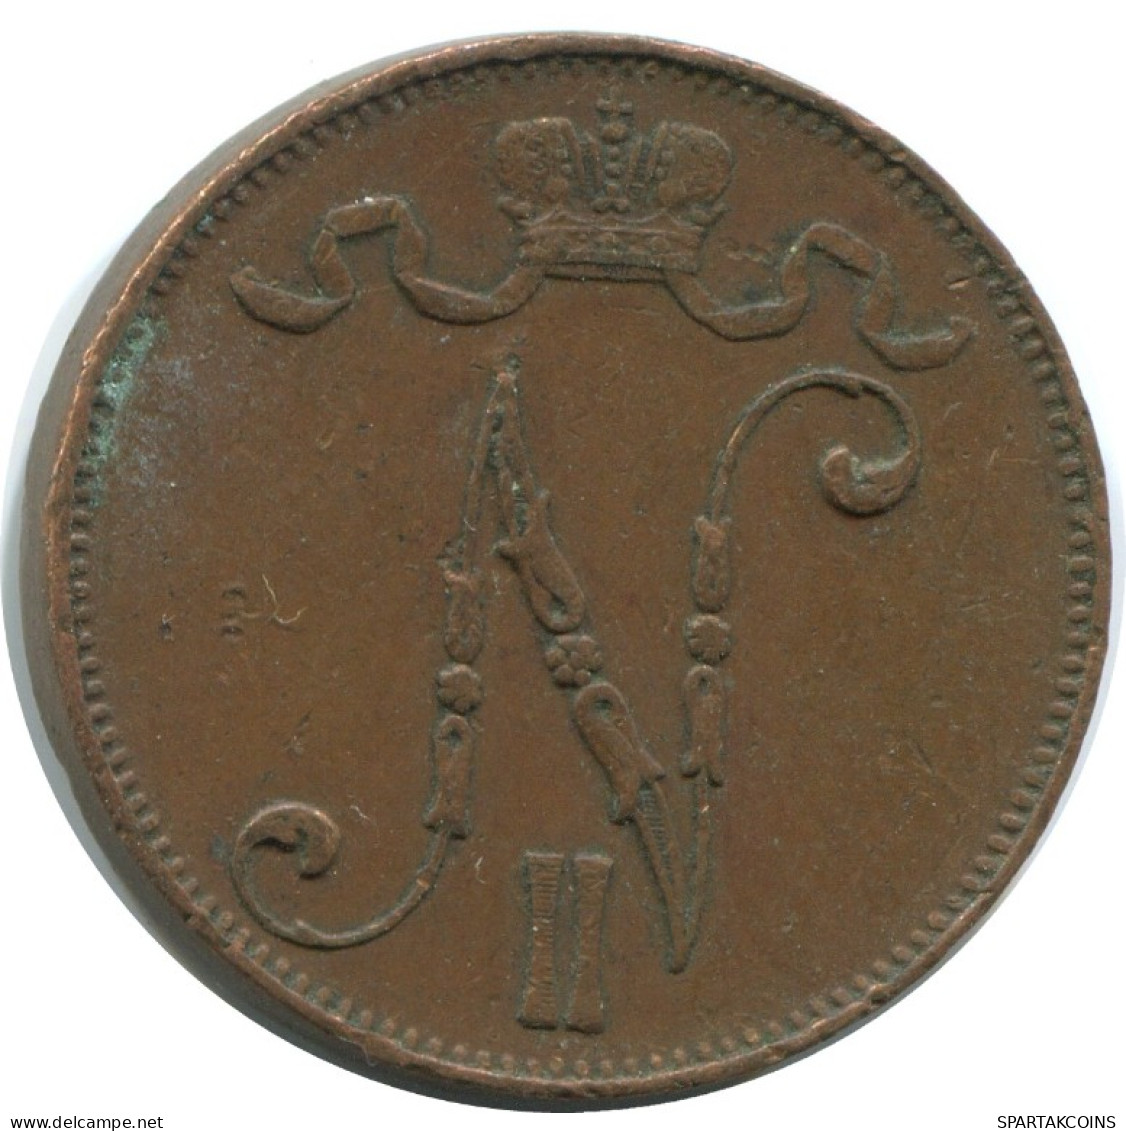 5 PENNIA 1916 FINLAND Coin RUSSIA EMPIRE #AB252.5.U.A - Finlande